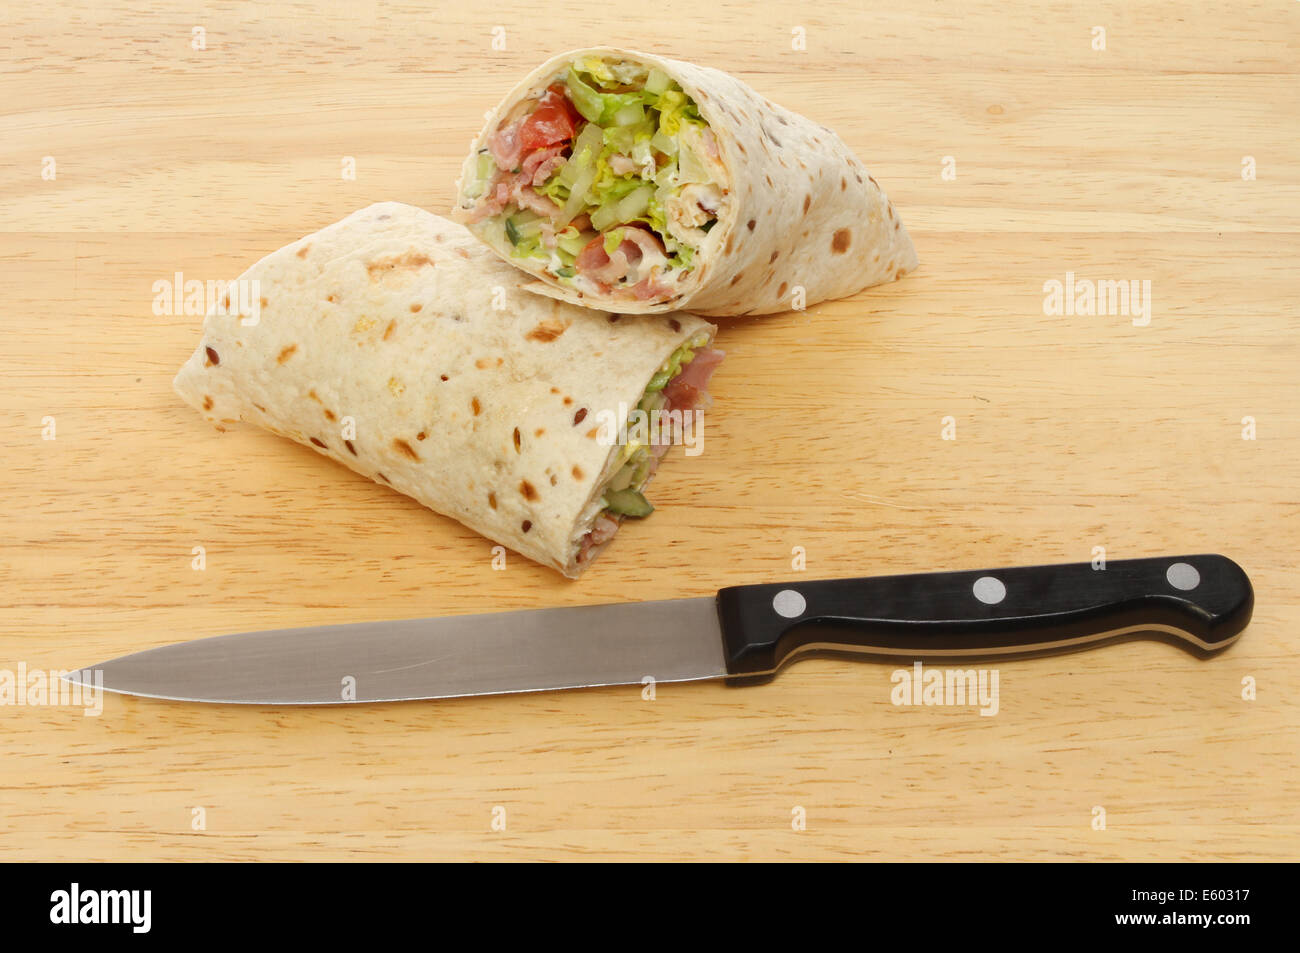 Speck-Salat Brot wickelt auf Holzbrett mit einem Messer Stockfoto